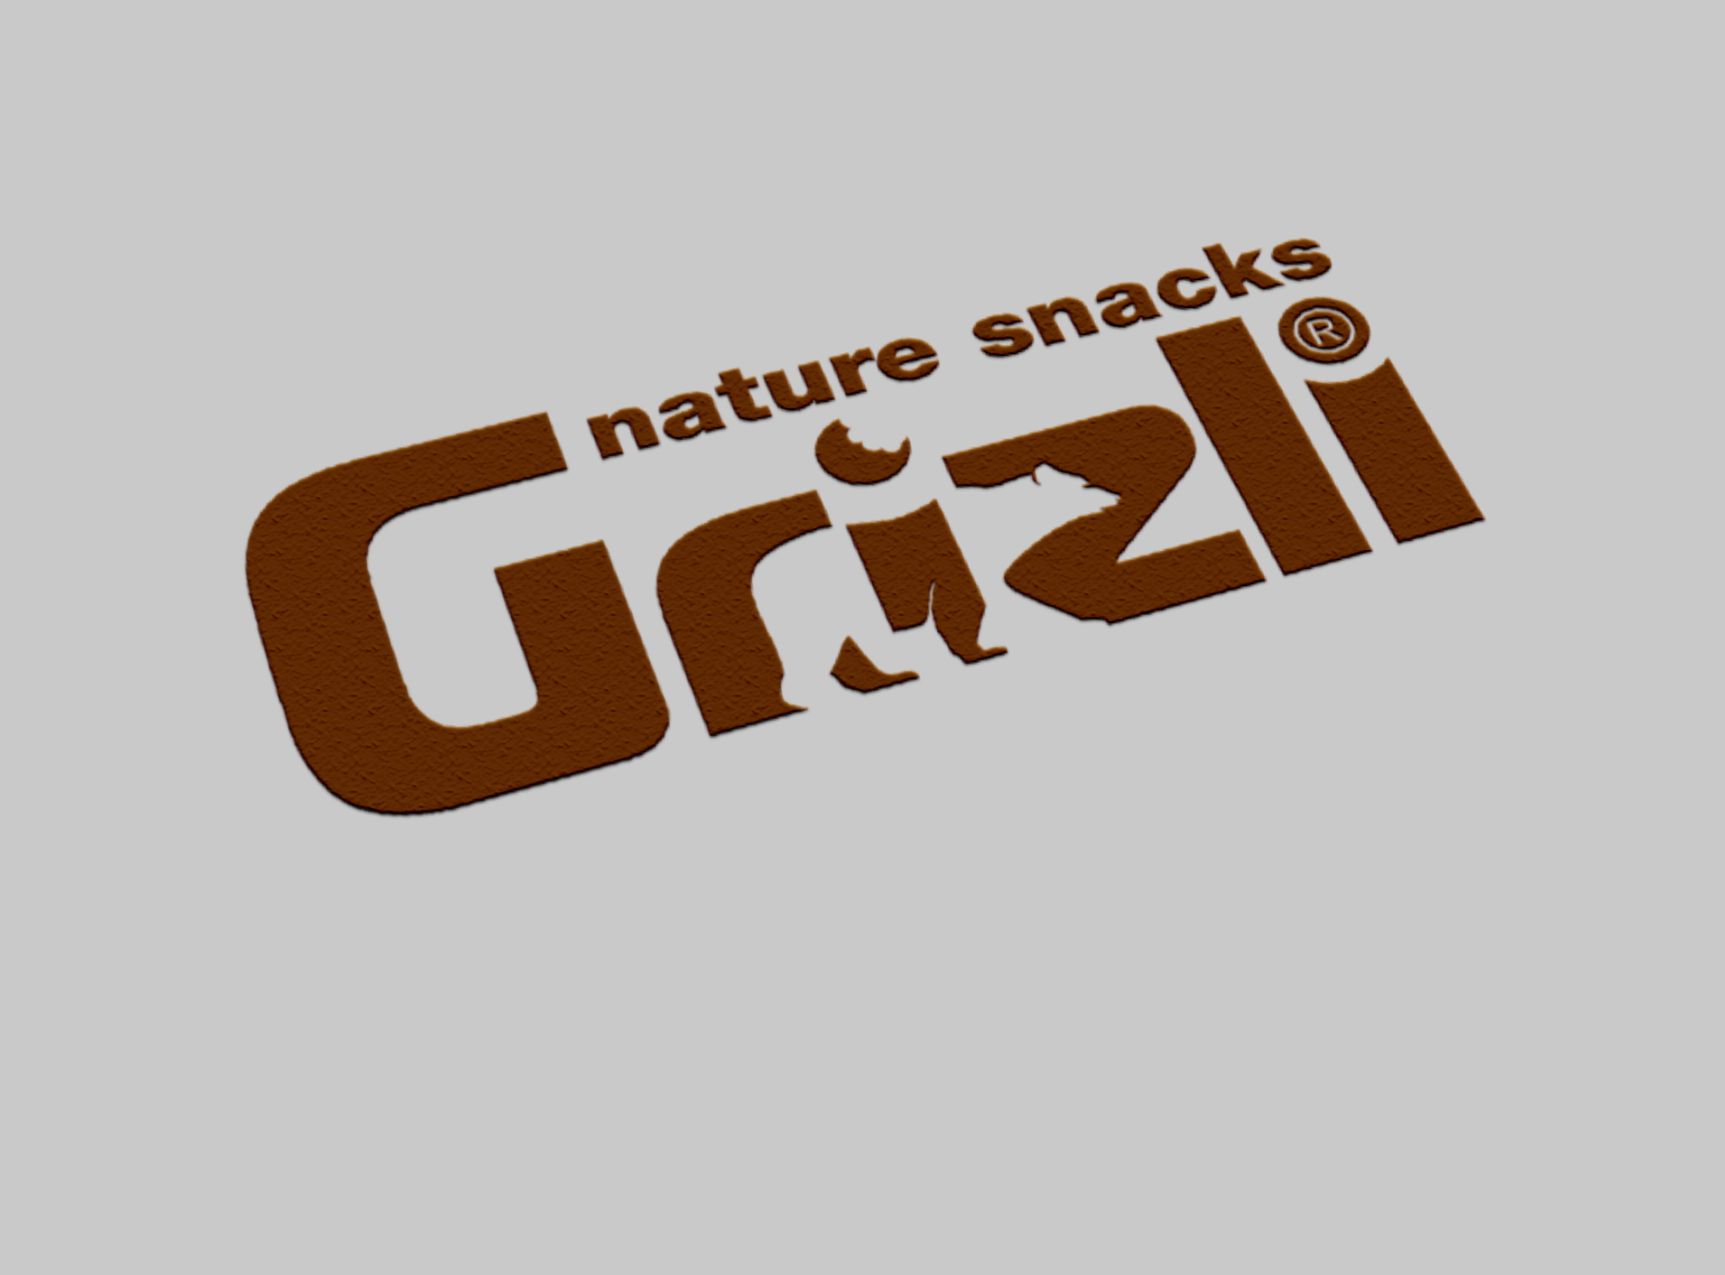 Логотип для Grizli - дизайнер Tamara_V